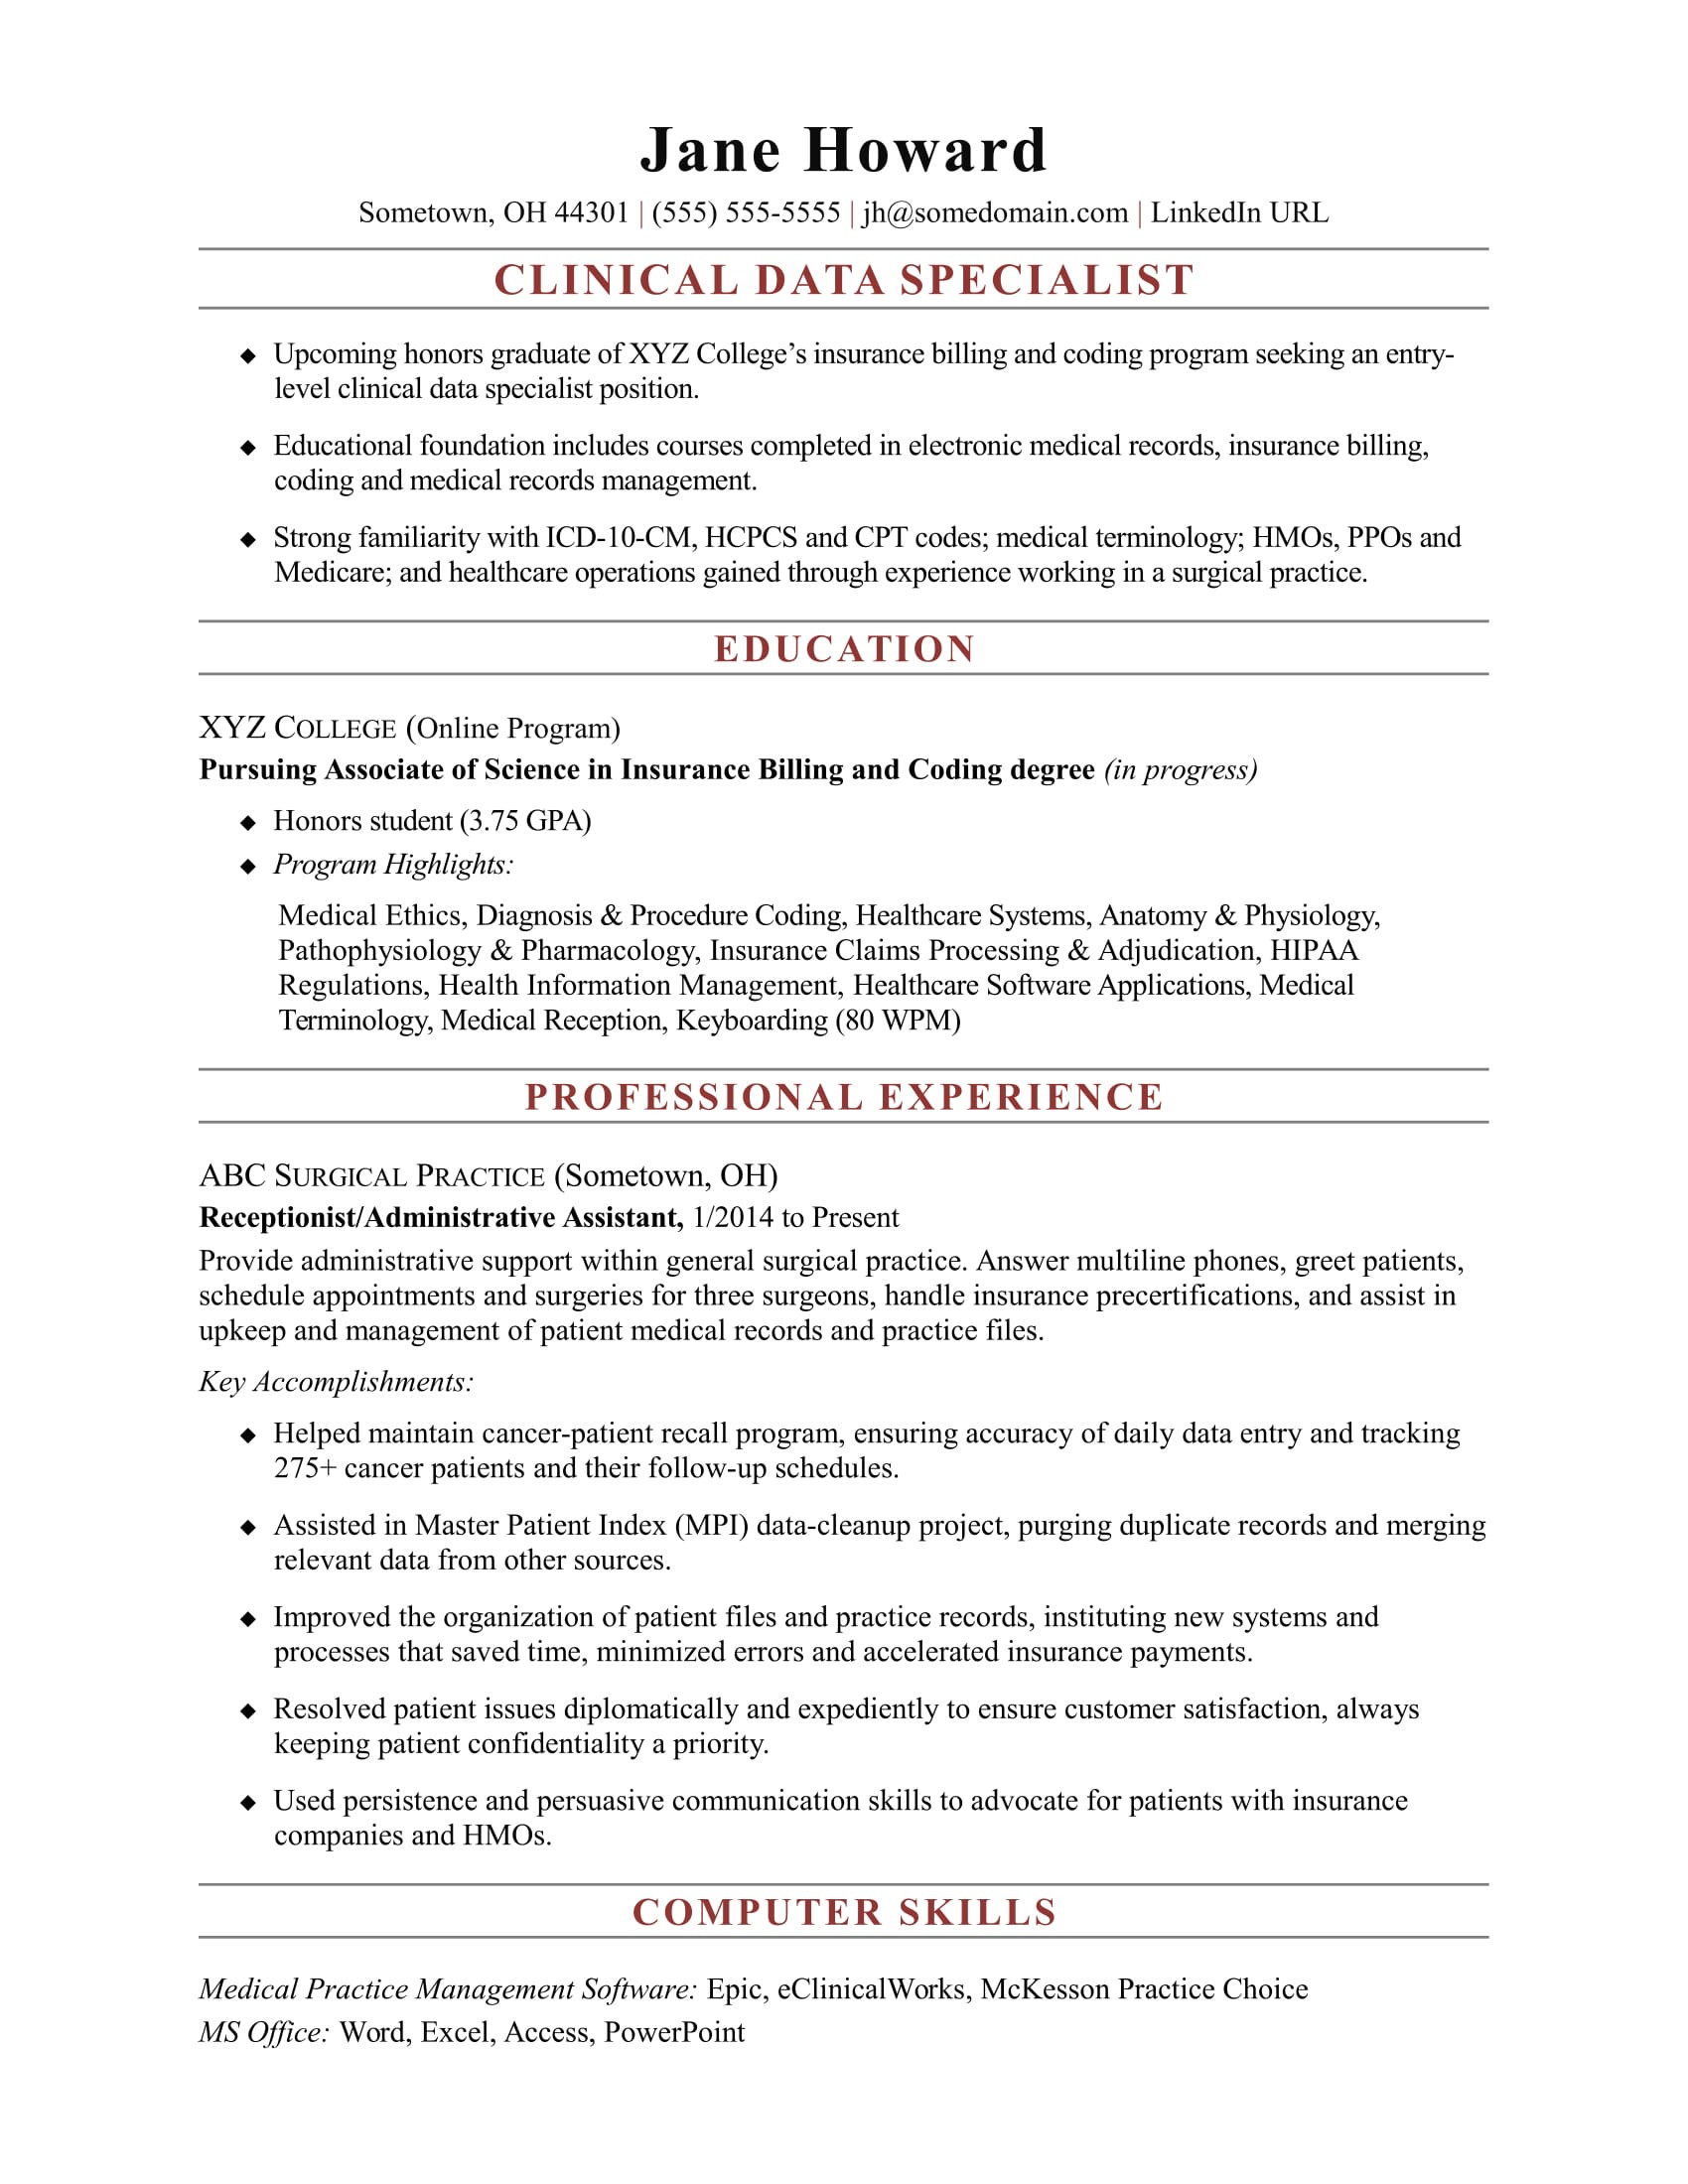 Entry Level Research associate Resume Sample Entry-level Clinical Data Specialist Resume Sample Monster.com